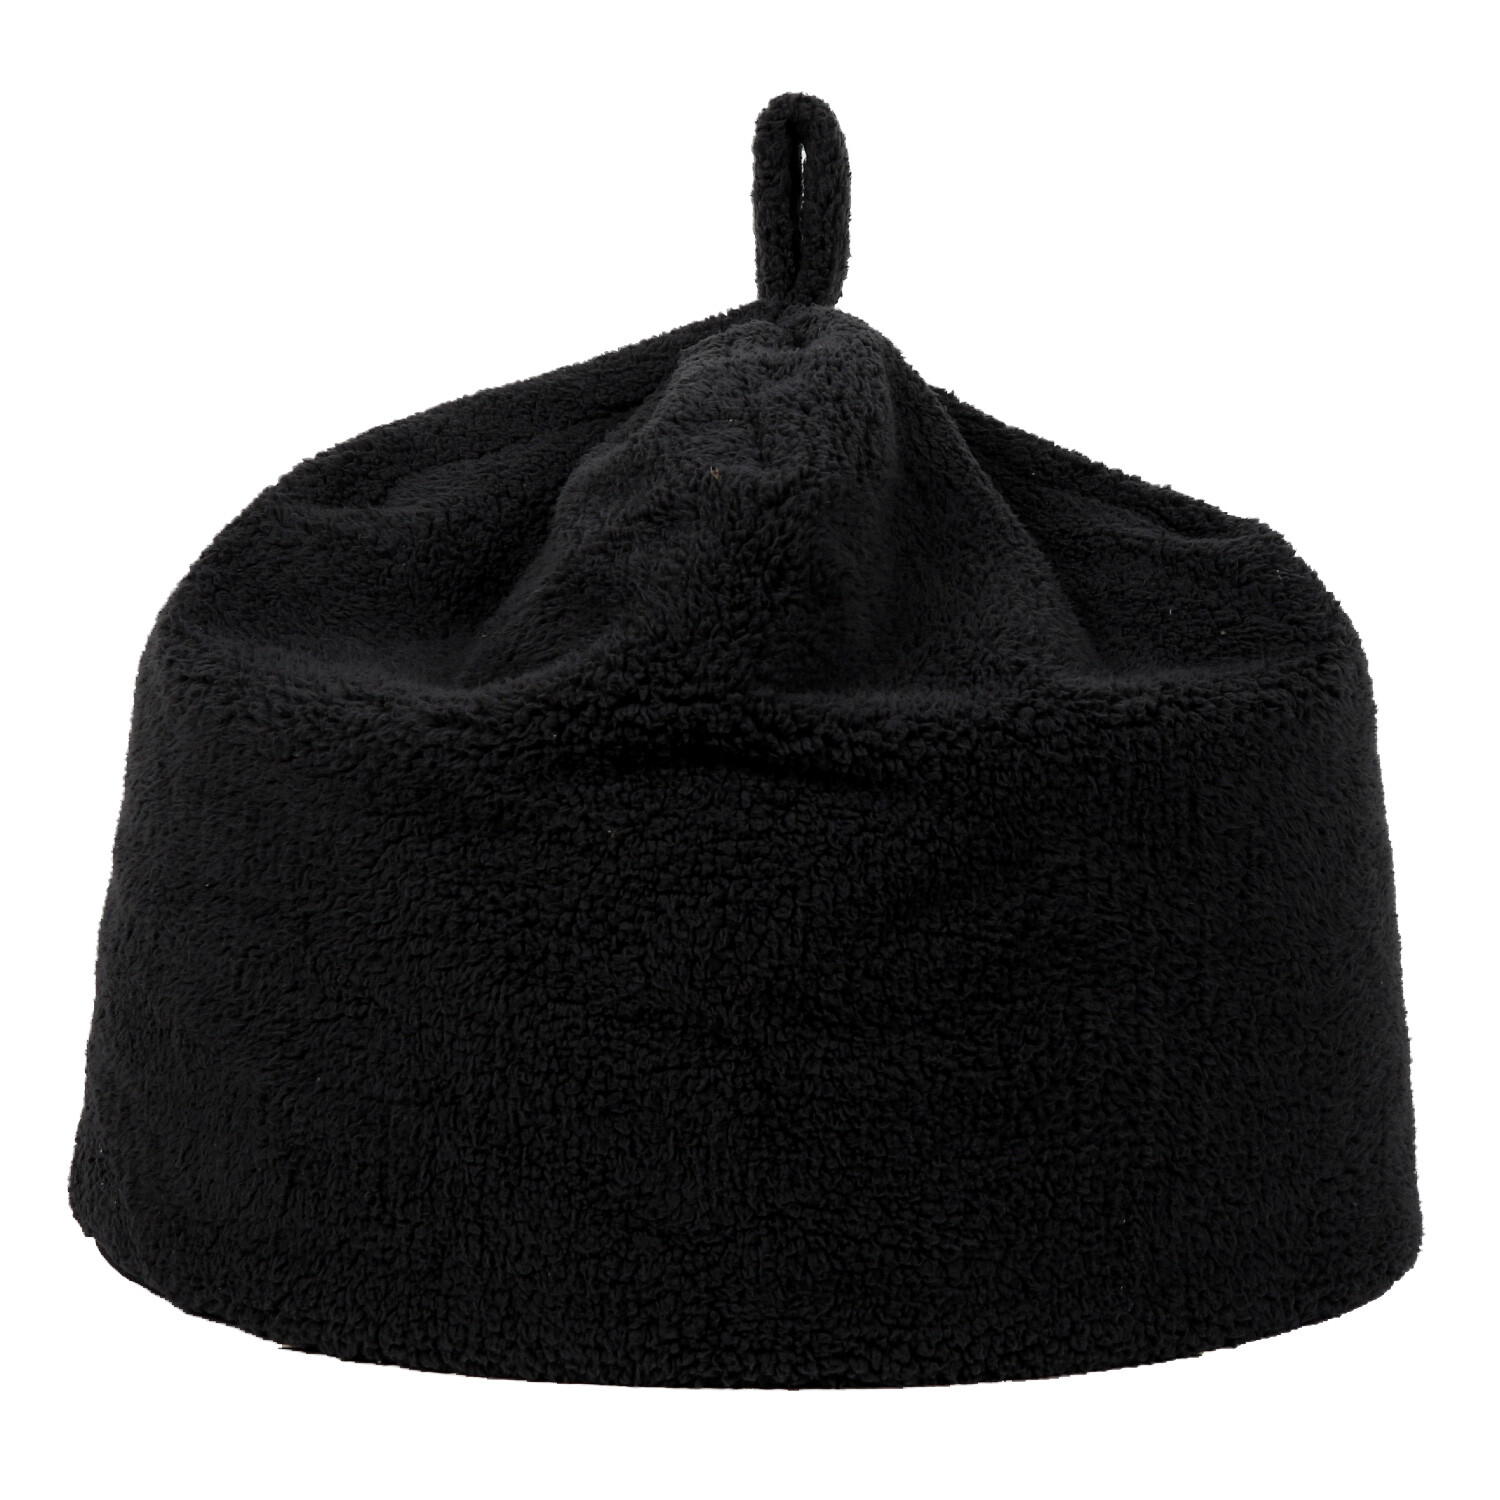 Divante Black Teddy Fleece Bean Bag Image 1